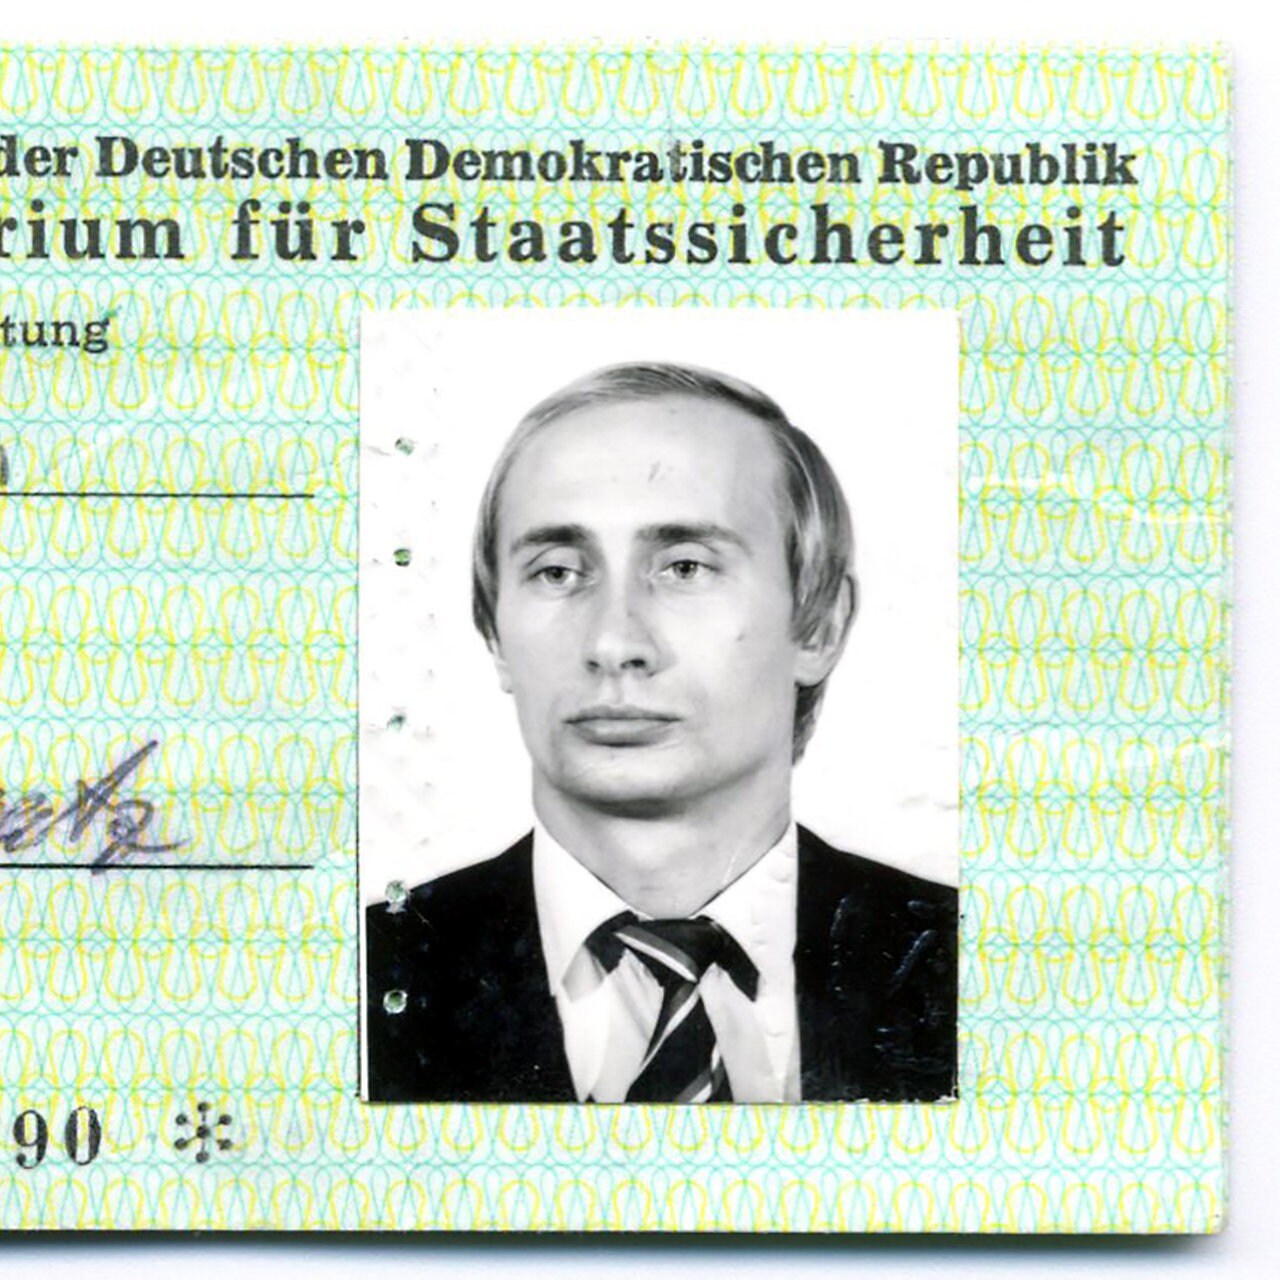 AU-417 KGB-Ausweis der Staatssicherheit als hochwertige Plastikkarte Stasi 